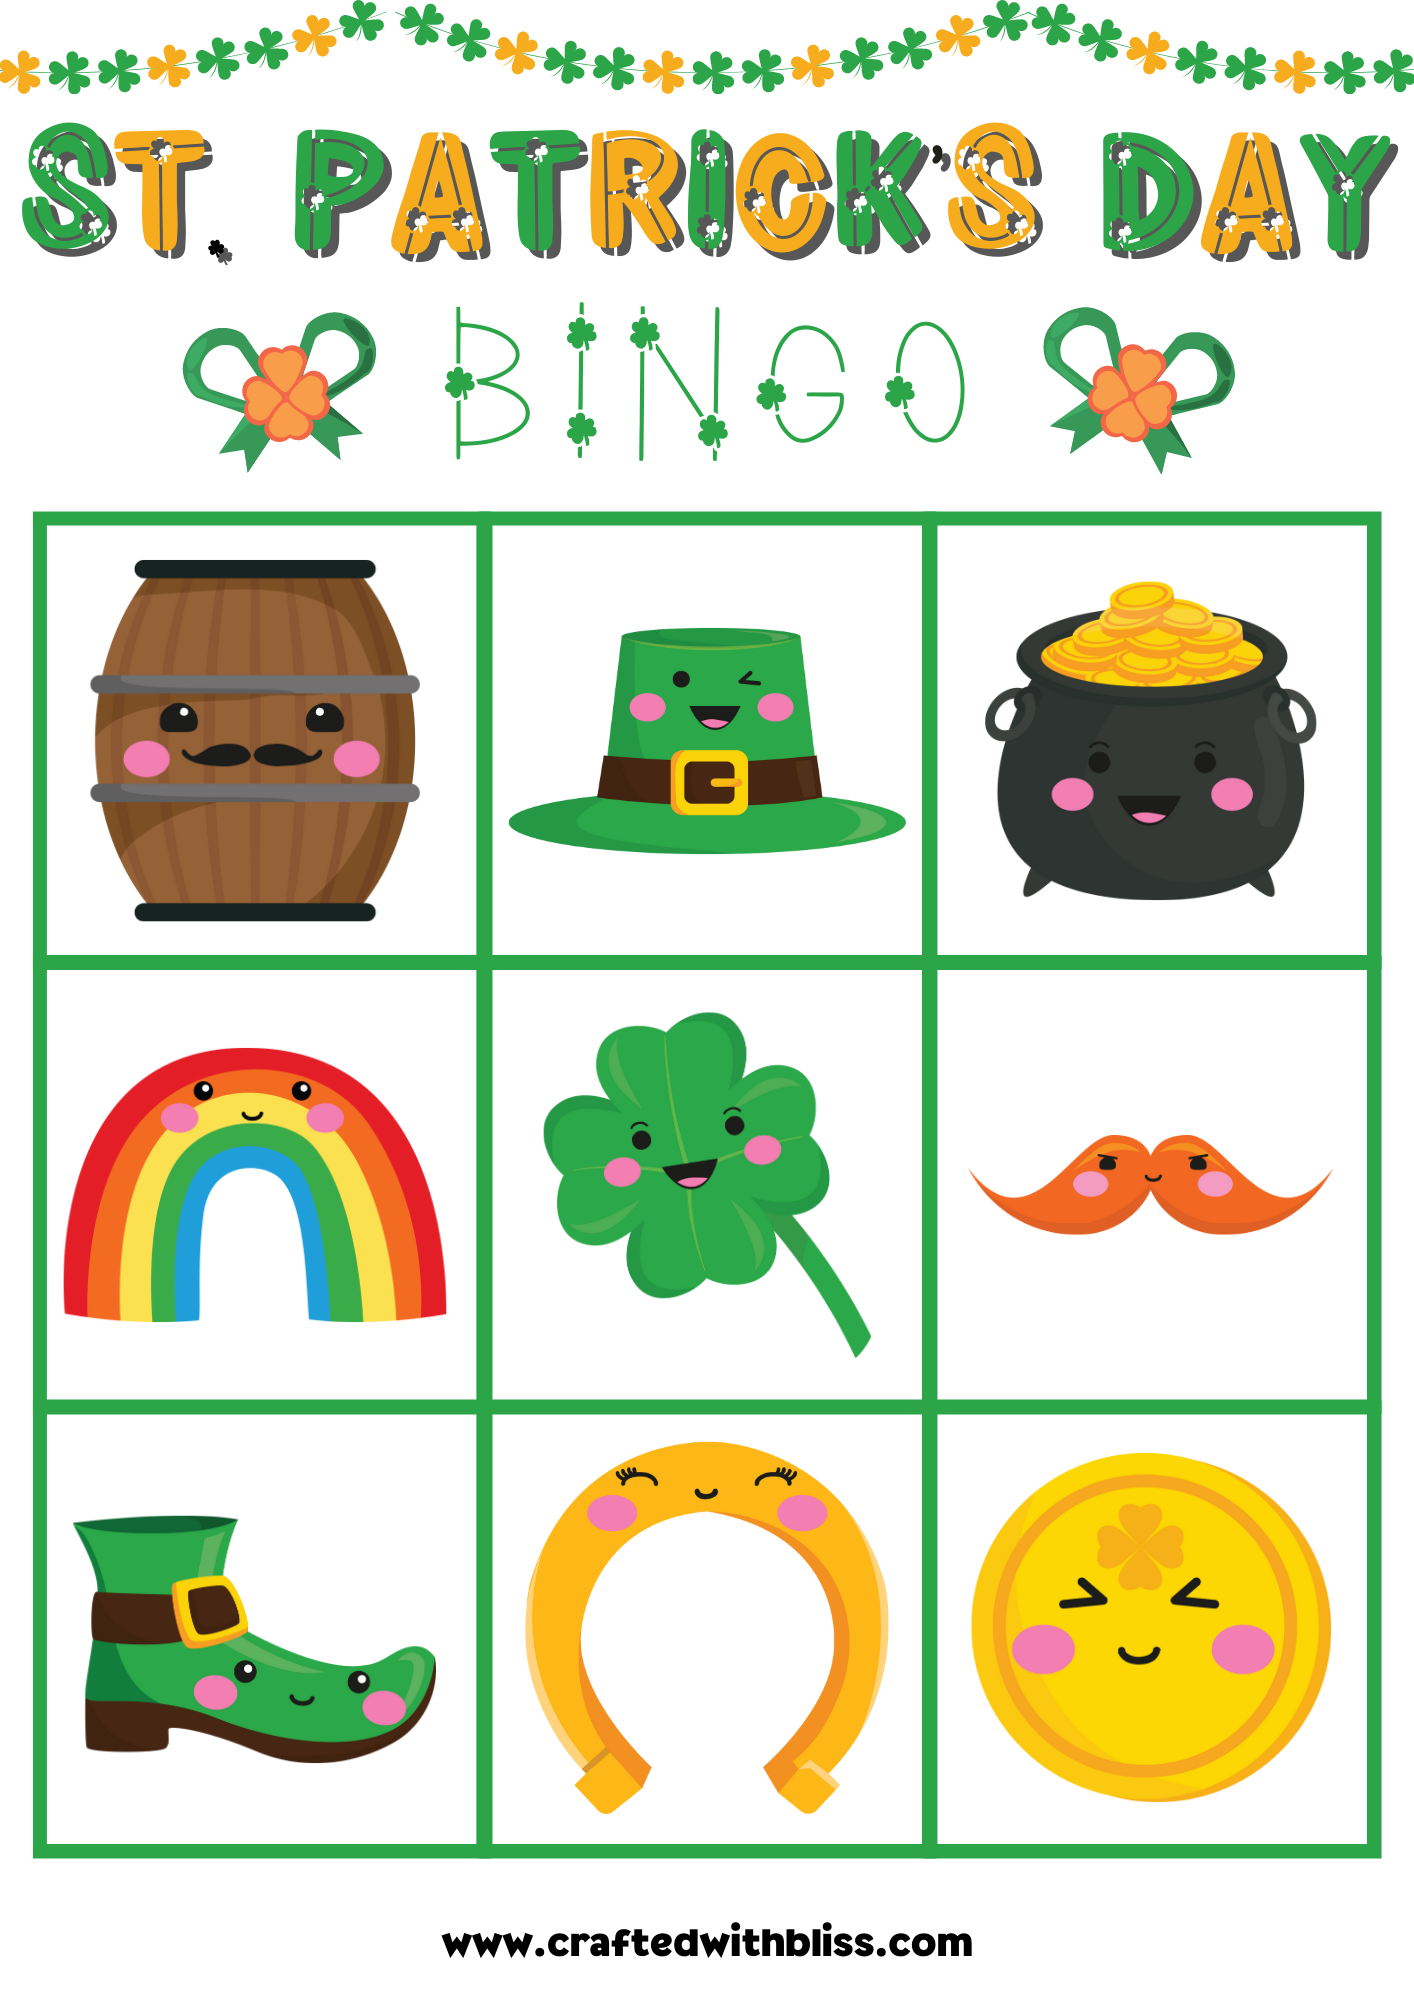 10 St. Patrick's Day BINGO For Preschool-Kindergarten